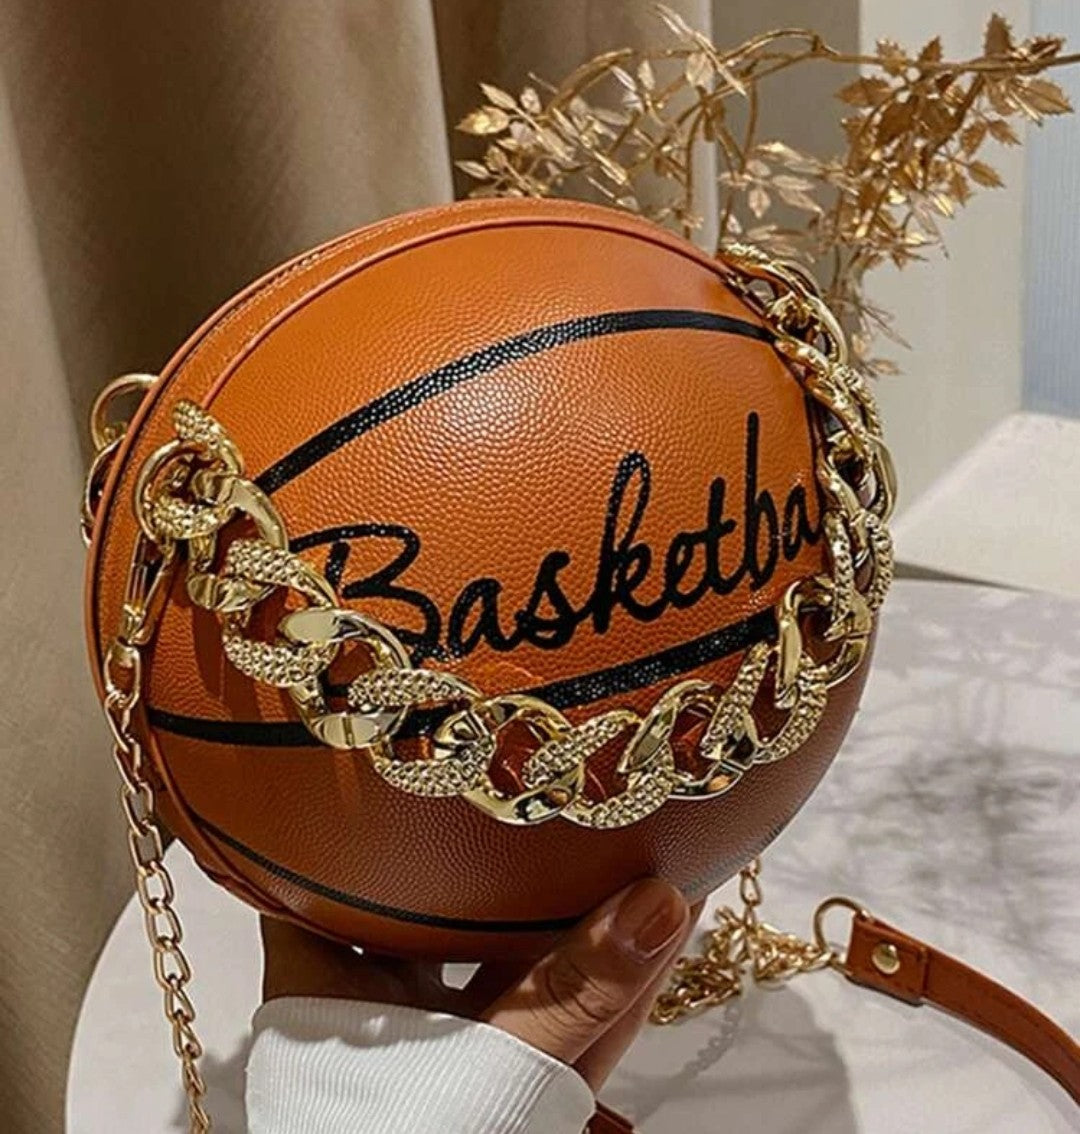 Basketball handbag